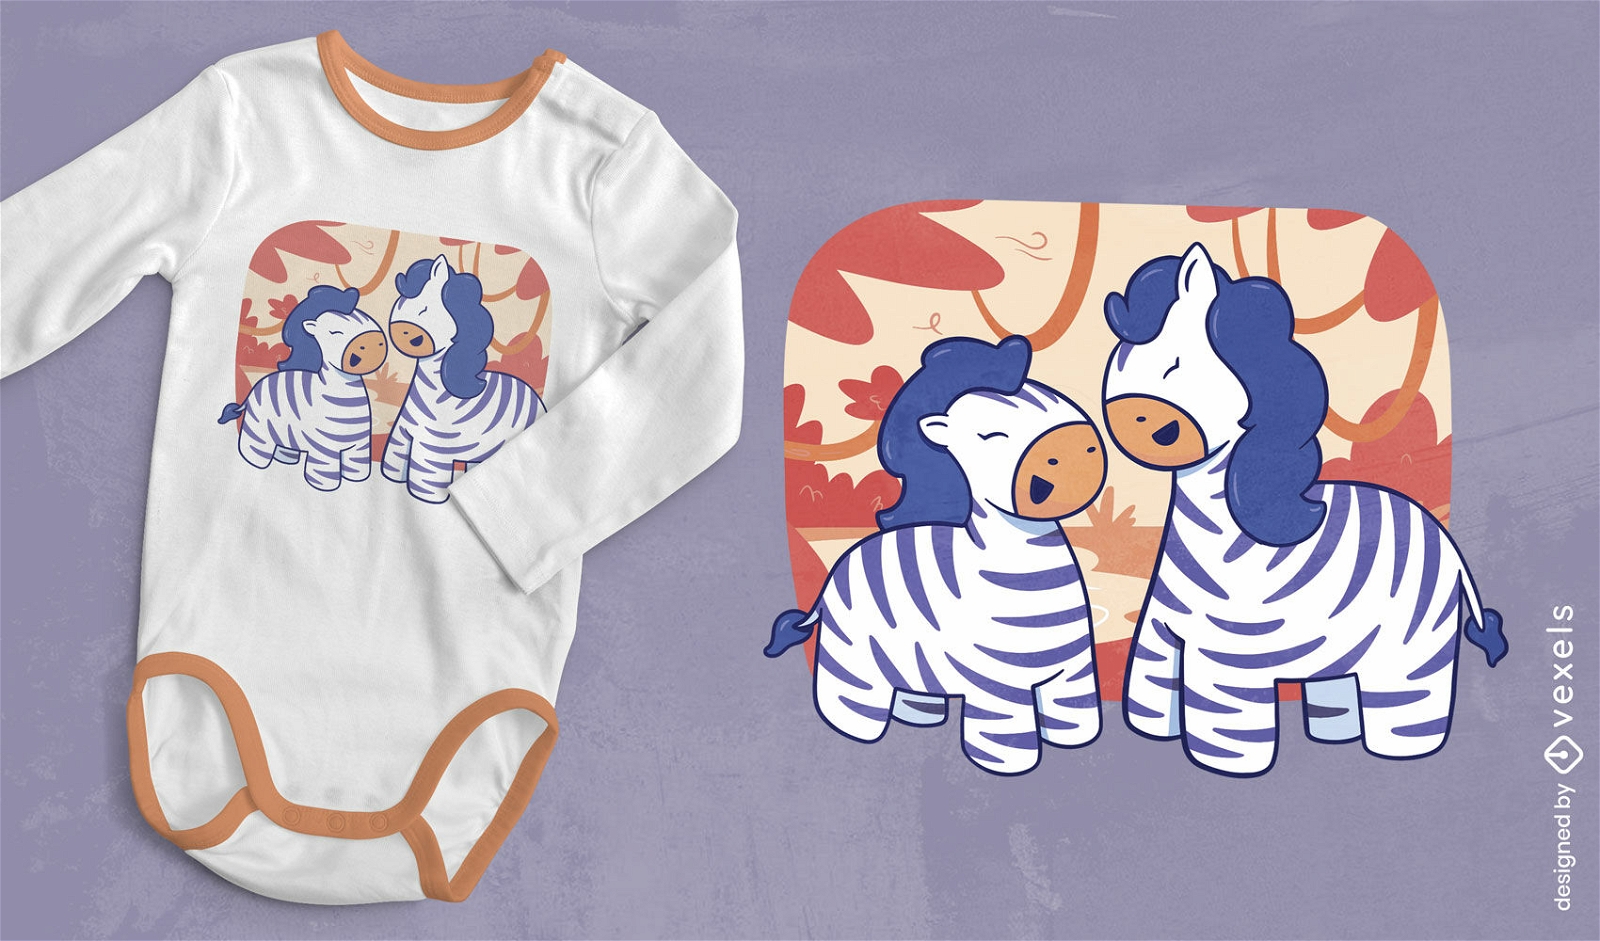 Zebra-Schwestern-T-Shirt-Design